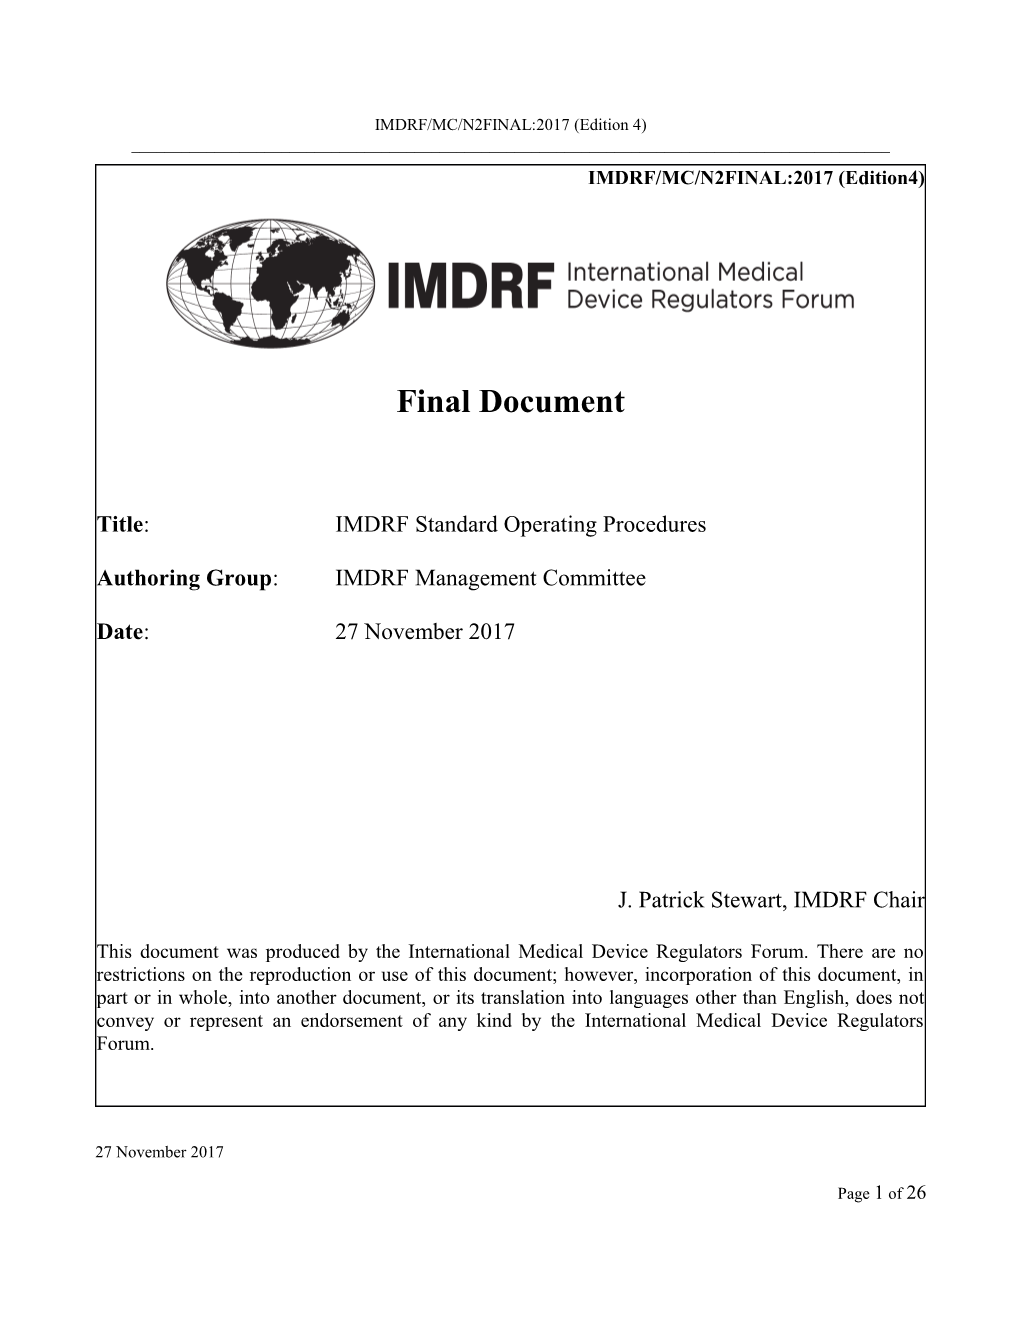 IMDRF Standard Operating Procedures